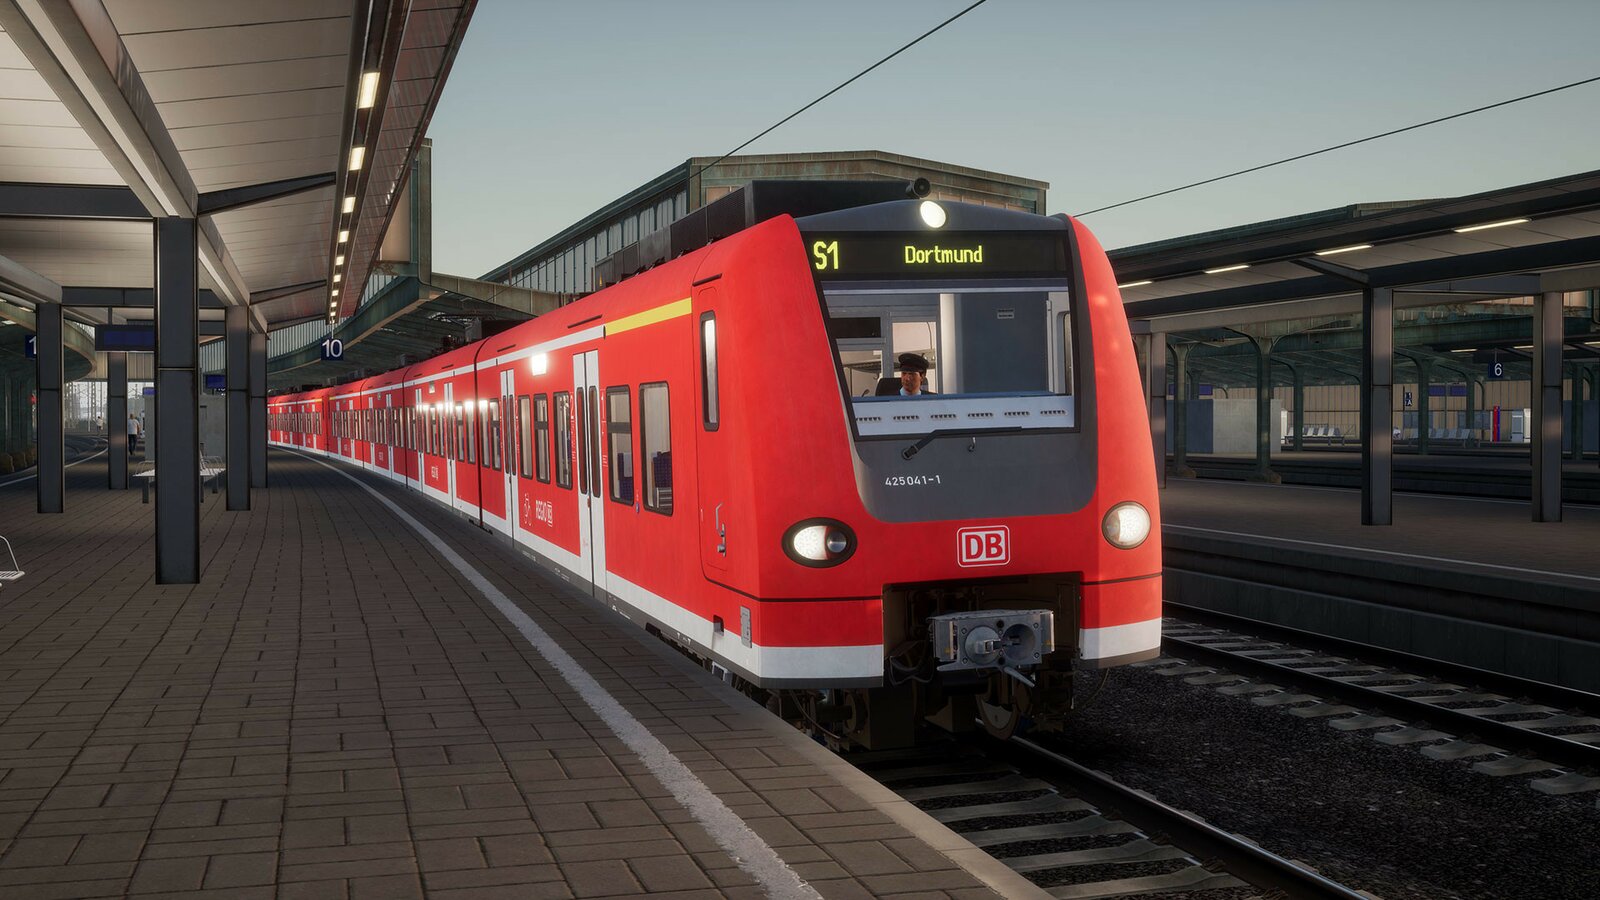 Train Sim World 2 - Hauptstrecke Rhein-Ruhr: Duisburg - Bochum Route